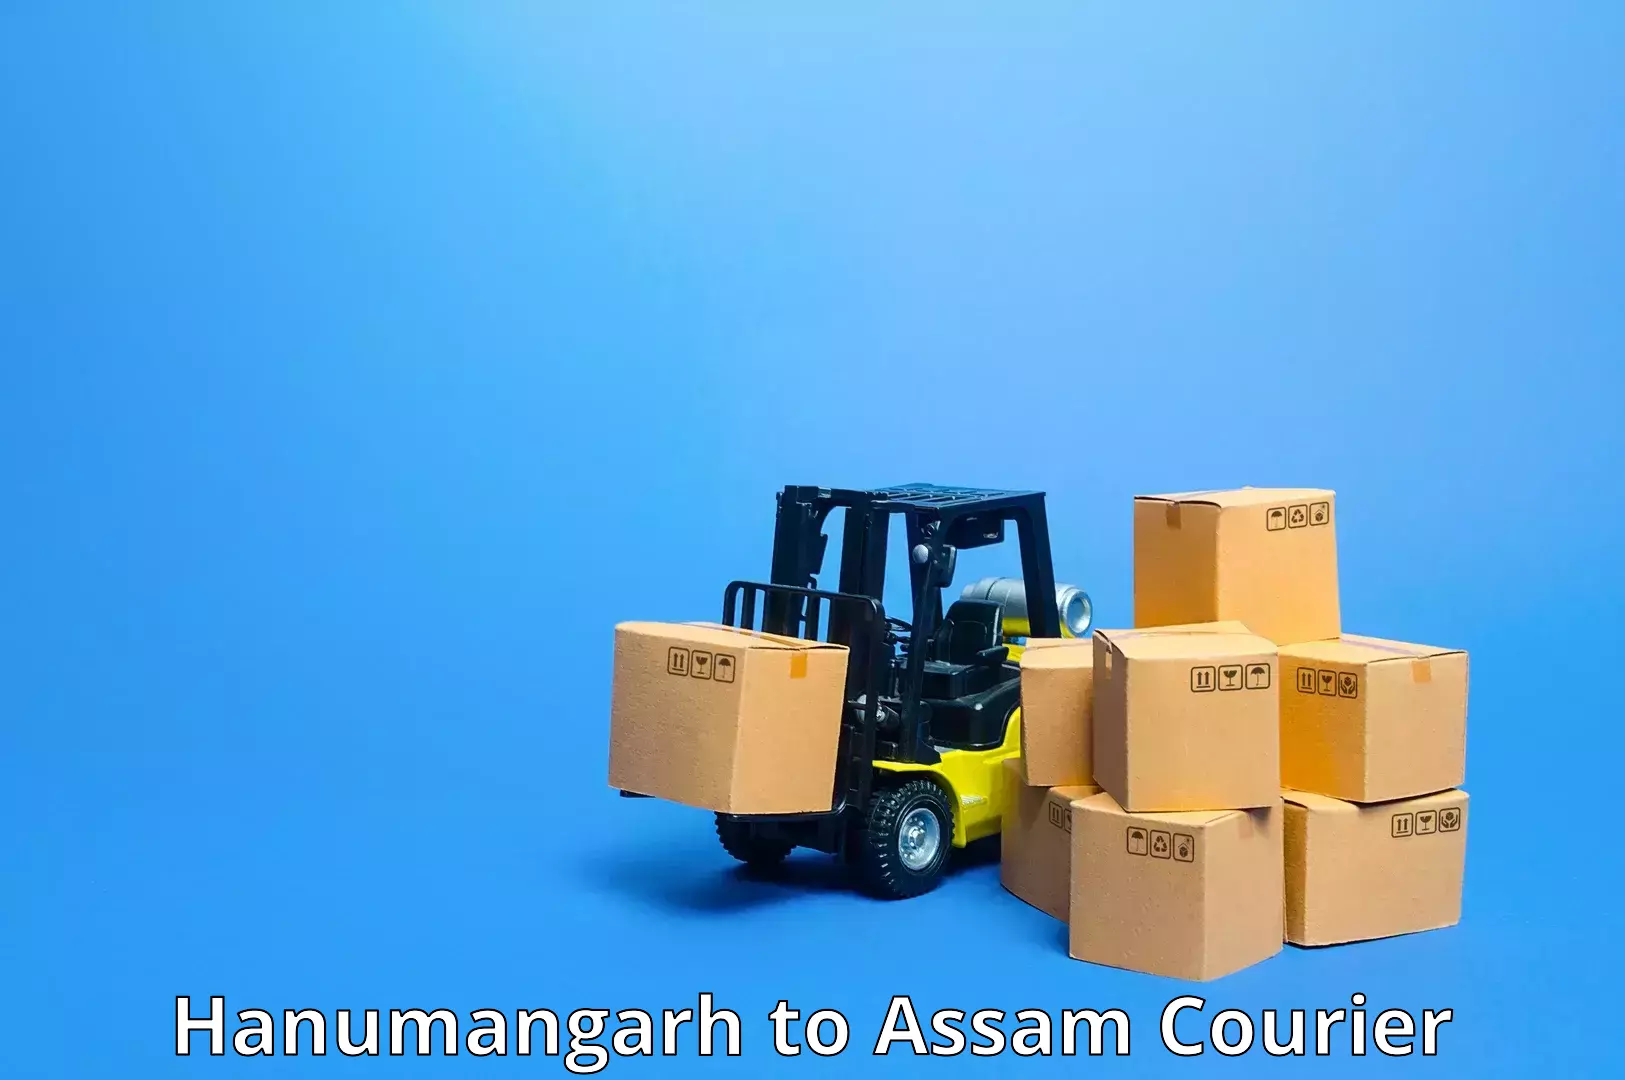 Quality courier partnerships Hanumangarh to Dhemaji